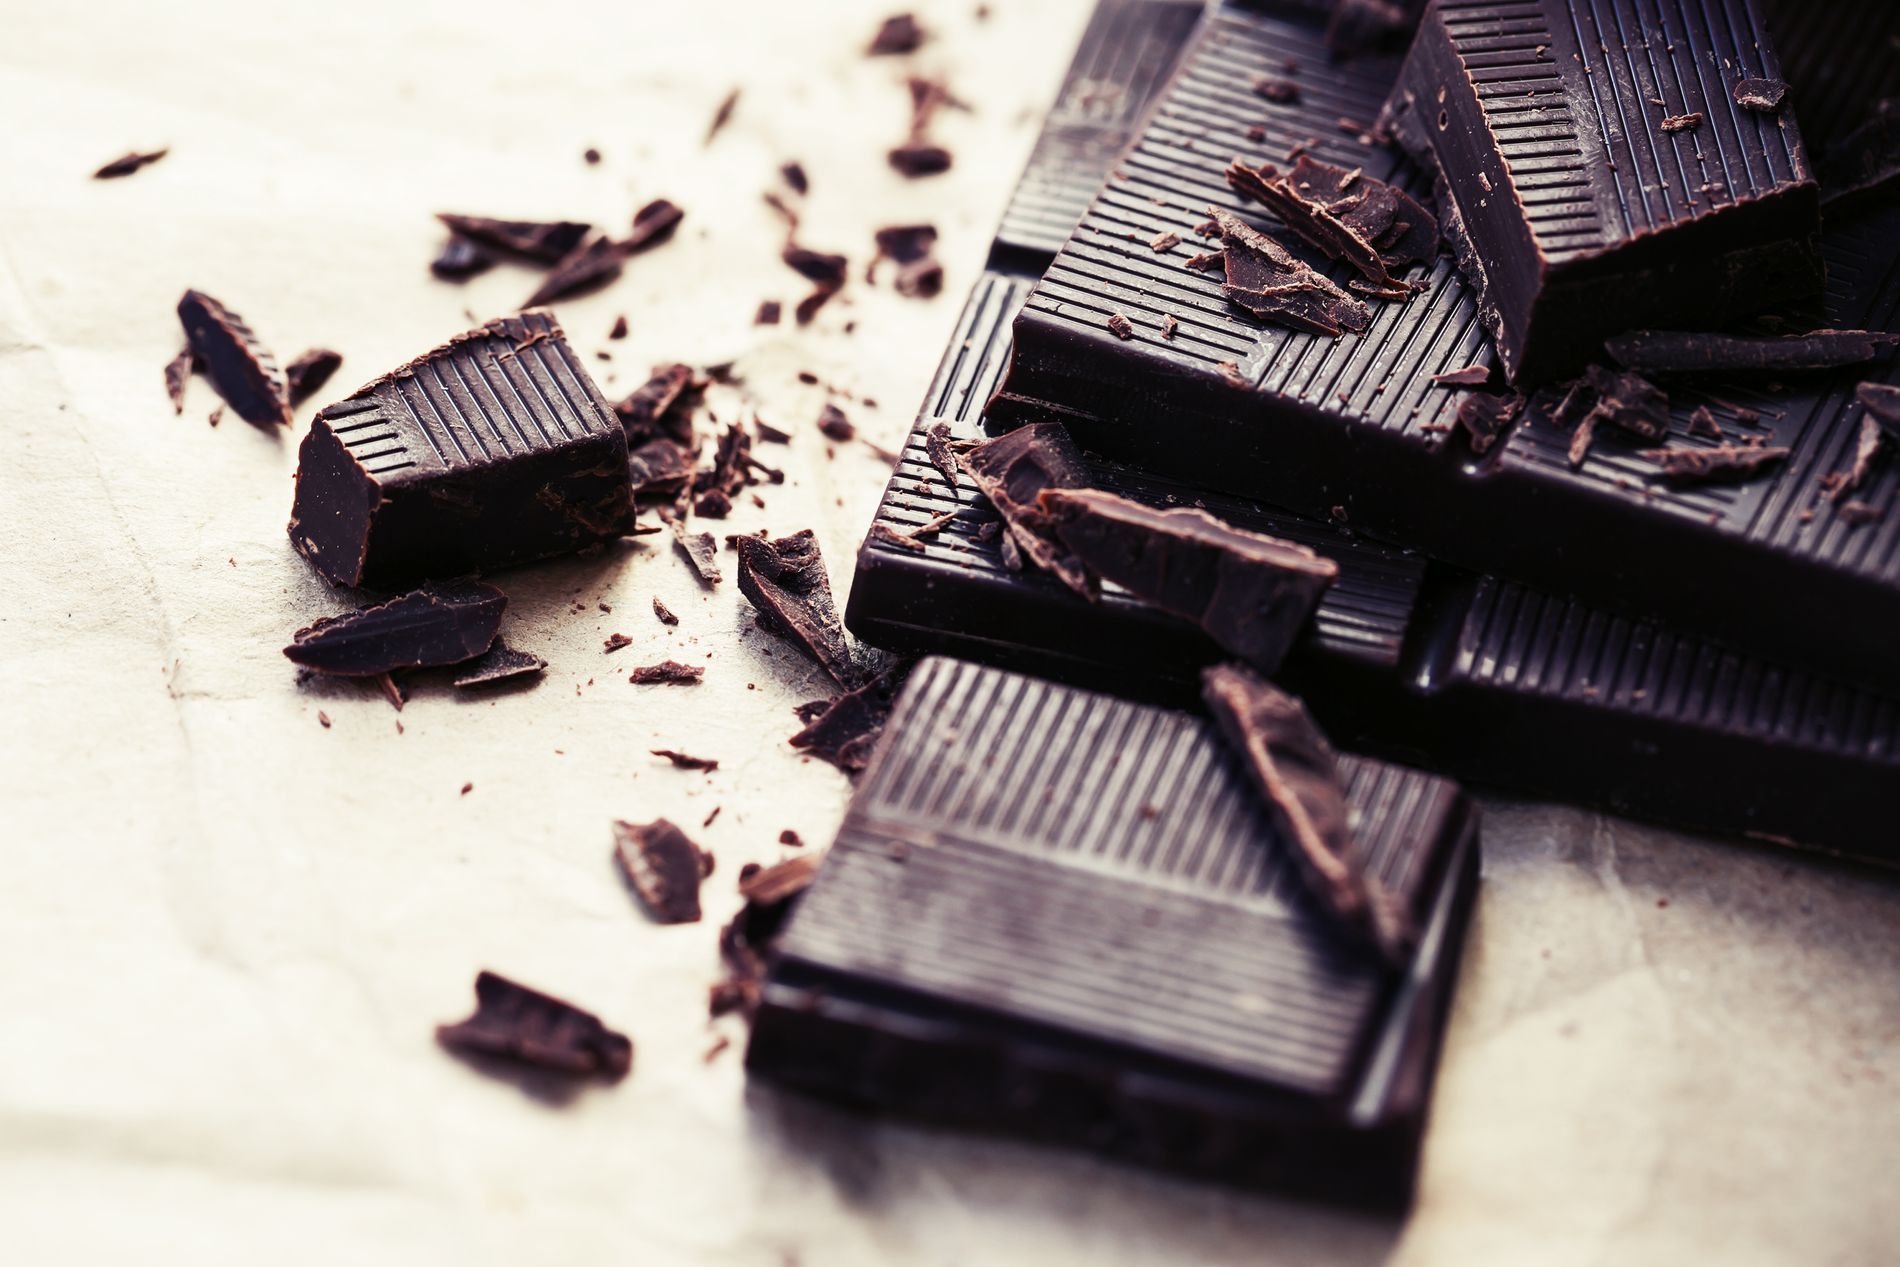 Mørk sjokolade er sunnere enn du tror!